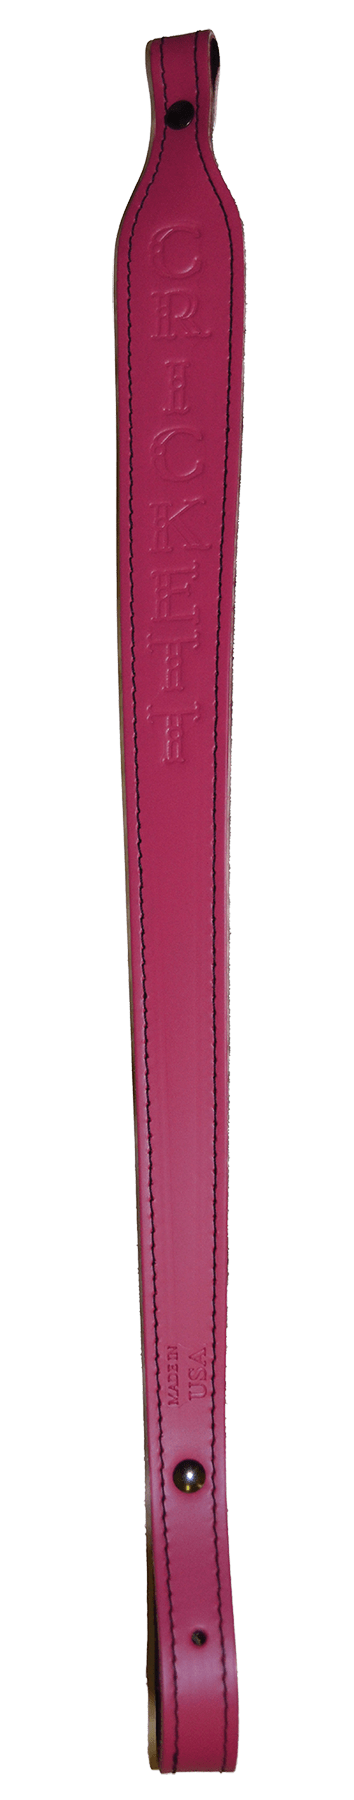 Crickett Crickett Sling Pink Leather - W/crickett Logo Slings